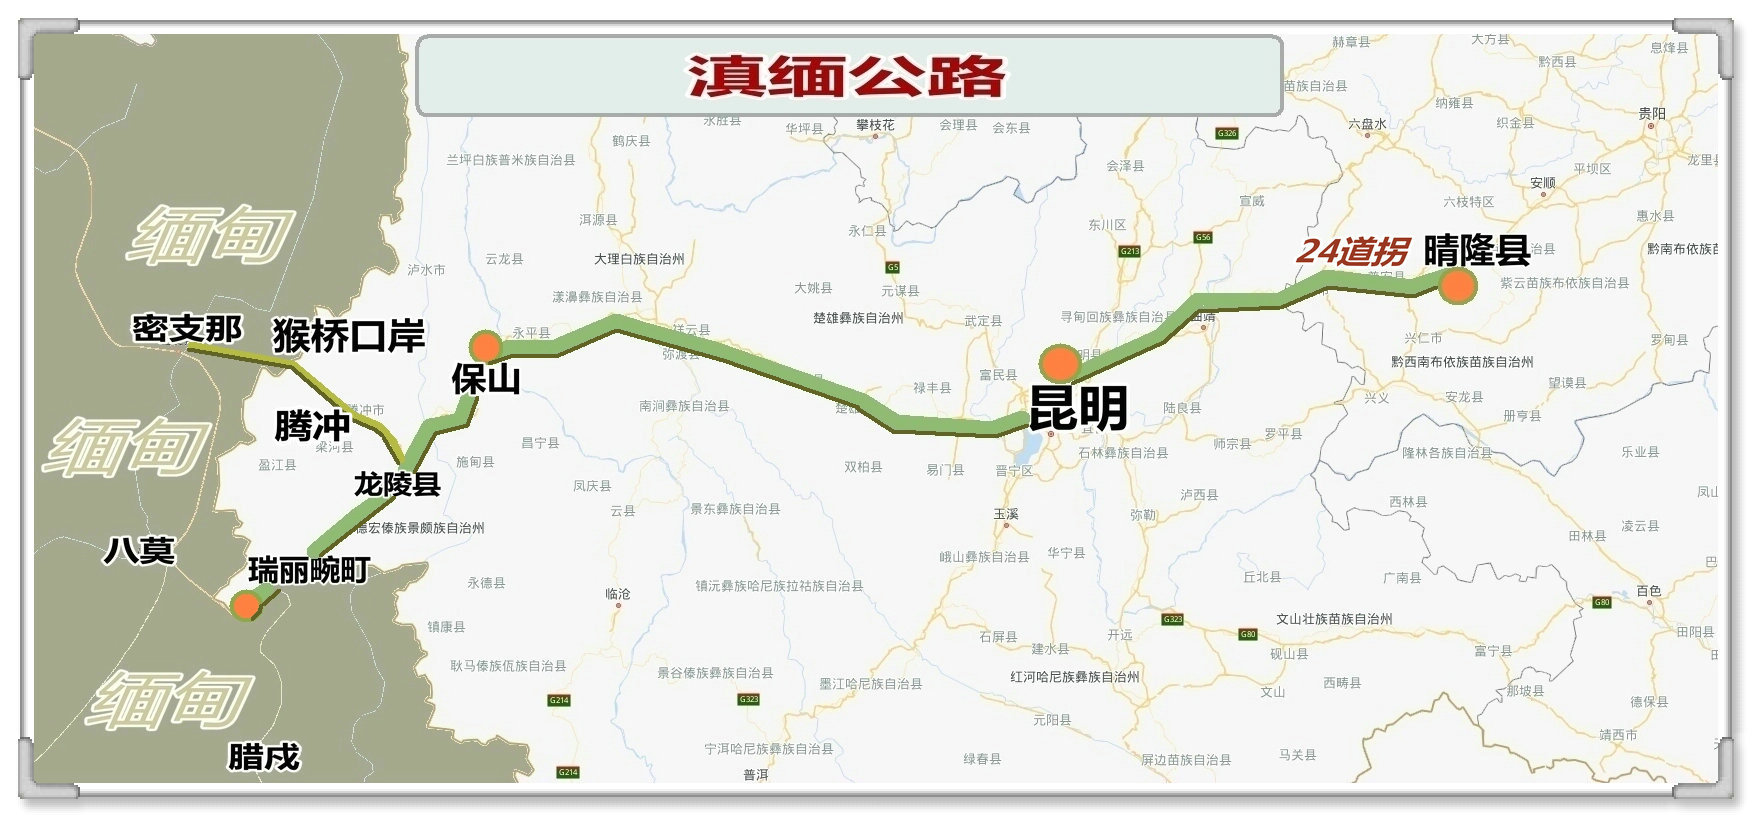 滇缅公路自驾路线图片